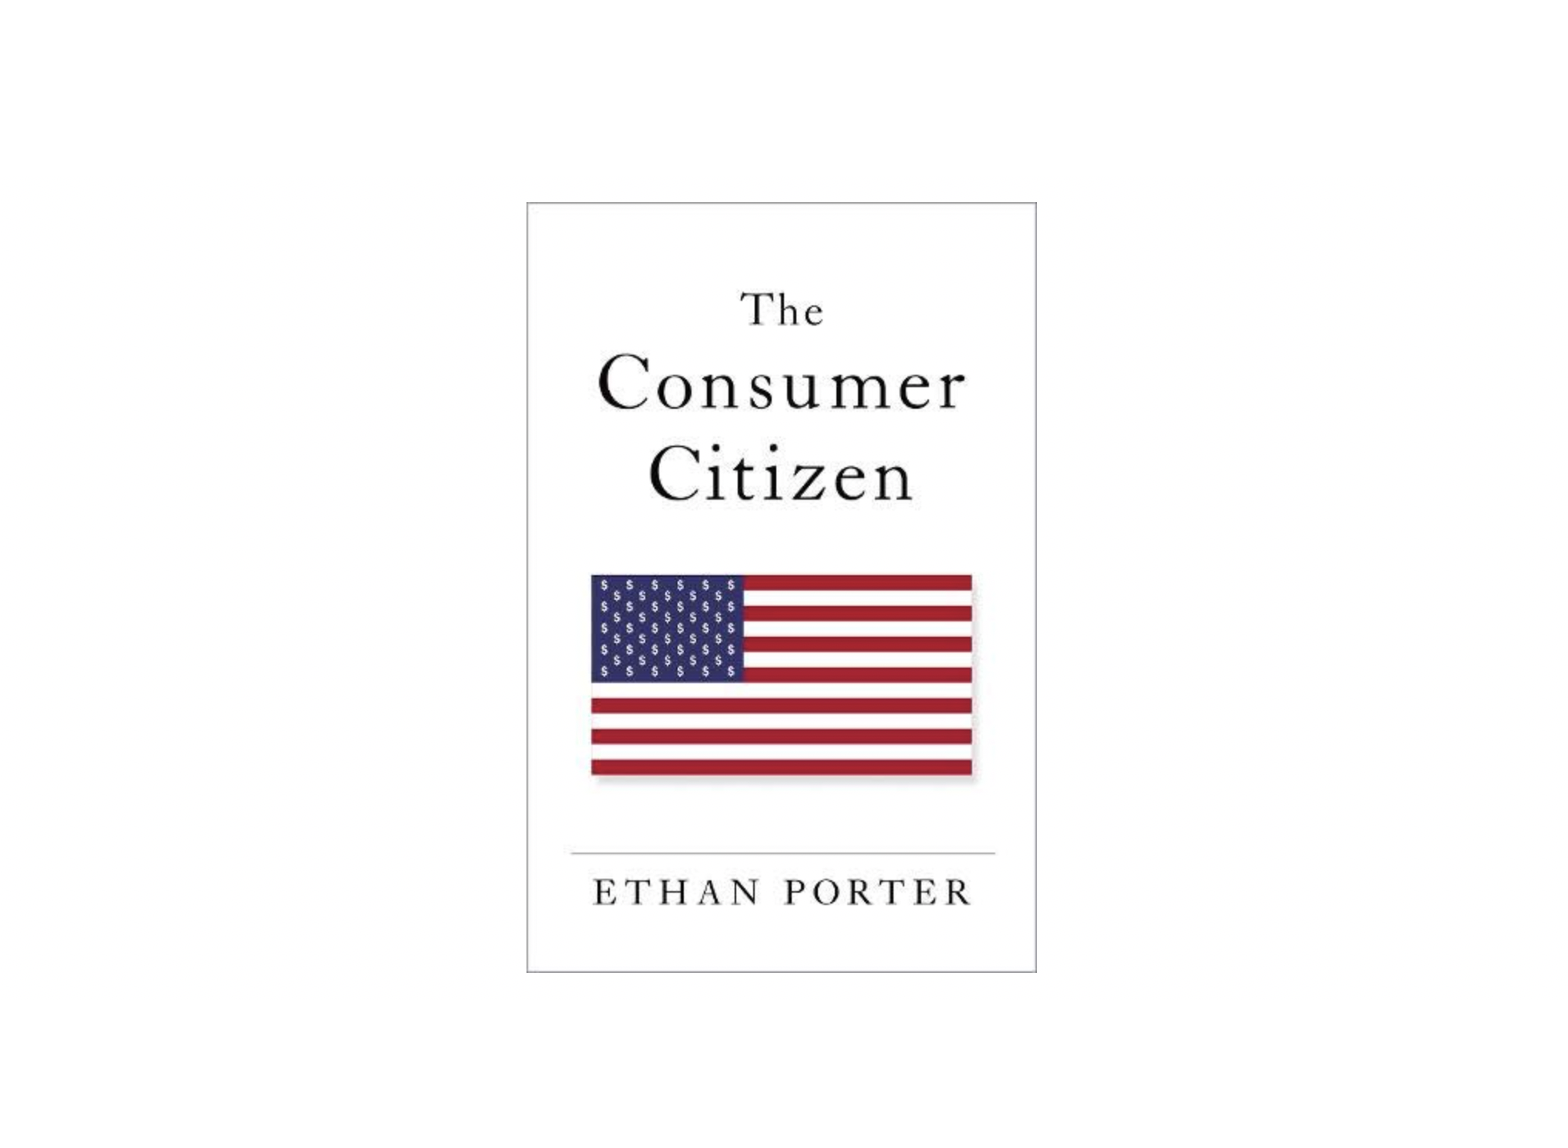 Consumer Citizen